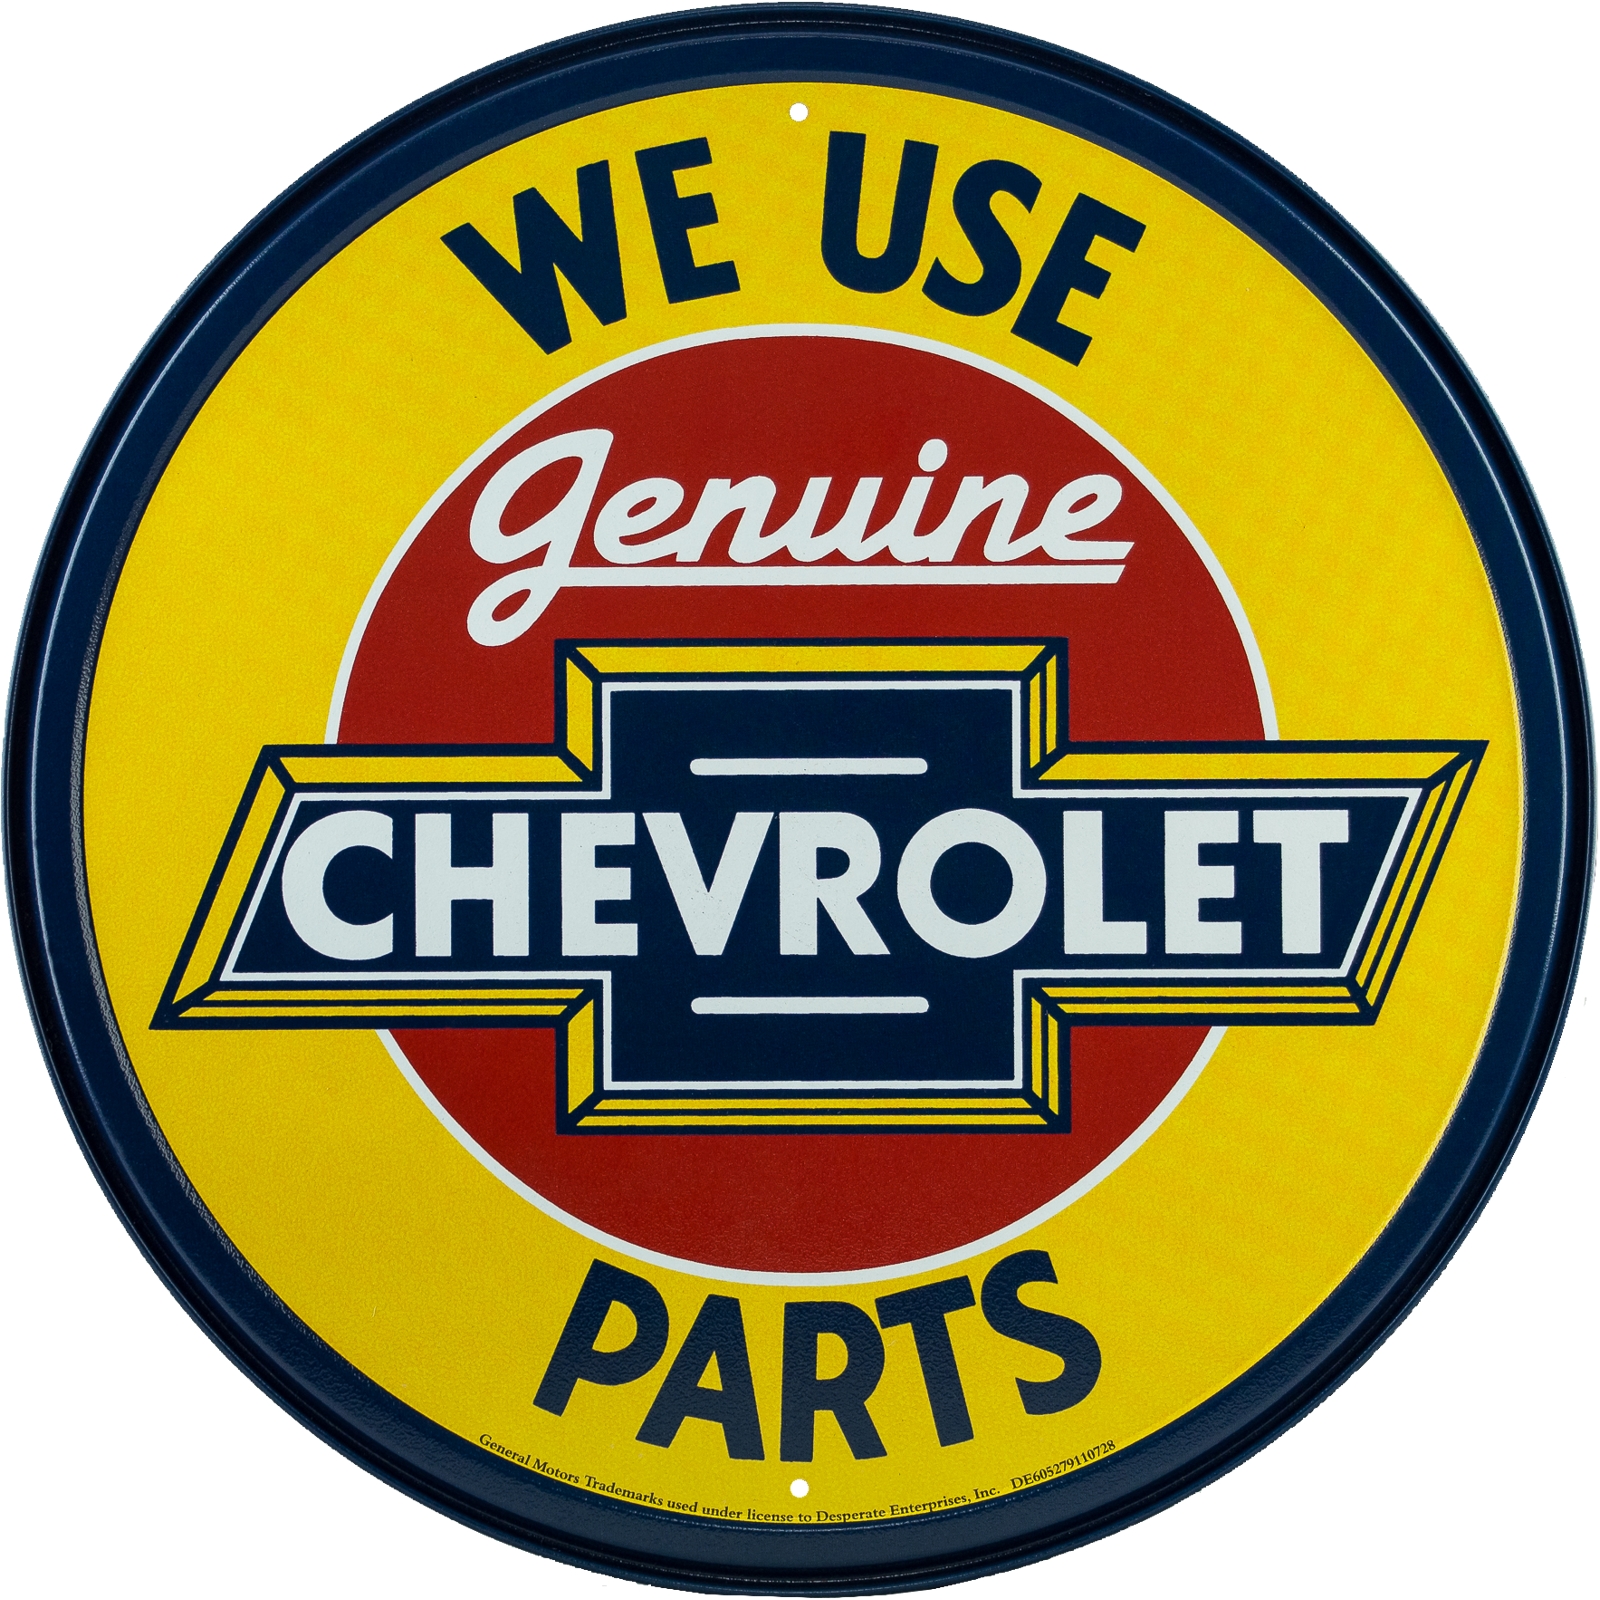 GENUINE CHEVROLET PARTS Round Vintage Tin Sign | eBay